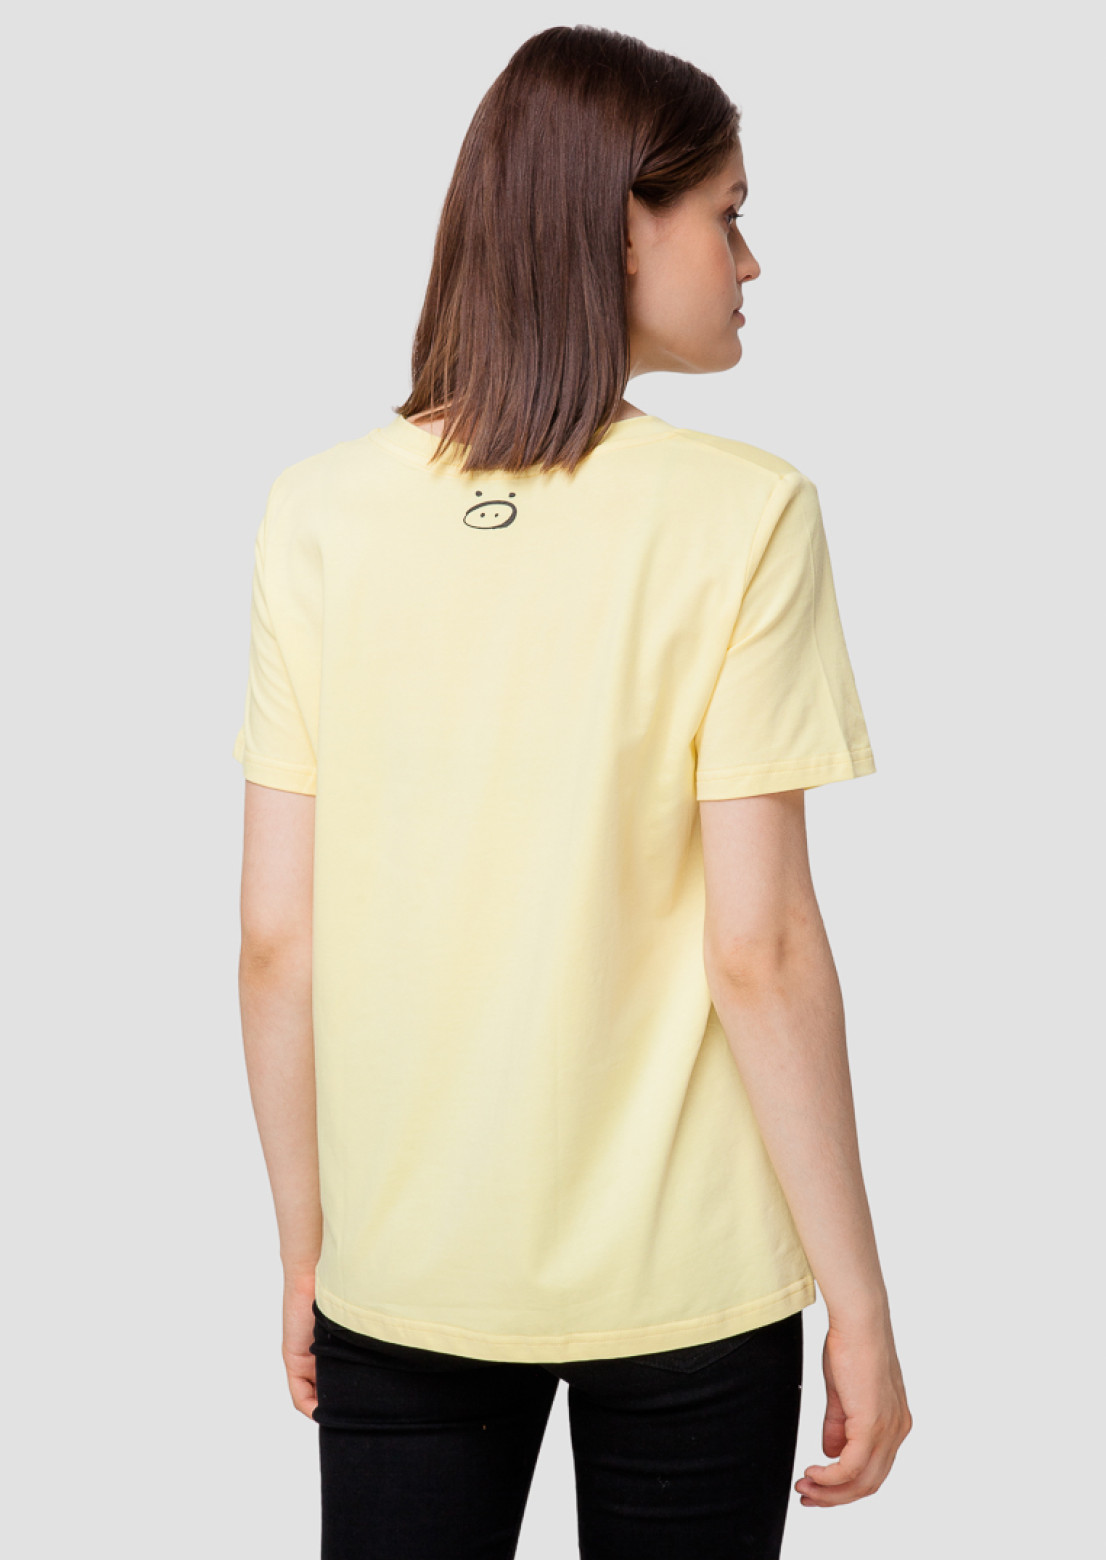  Yellow oversize T-shirt